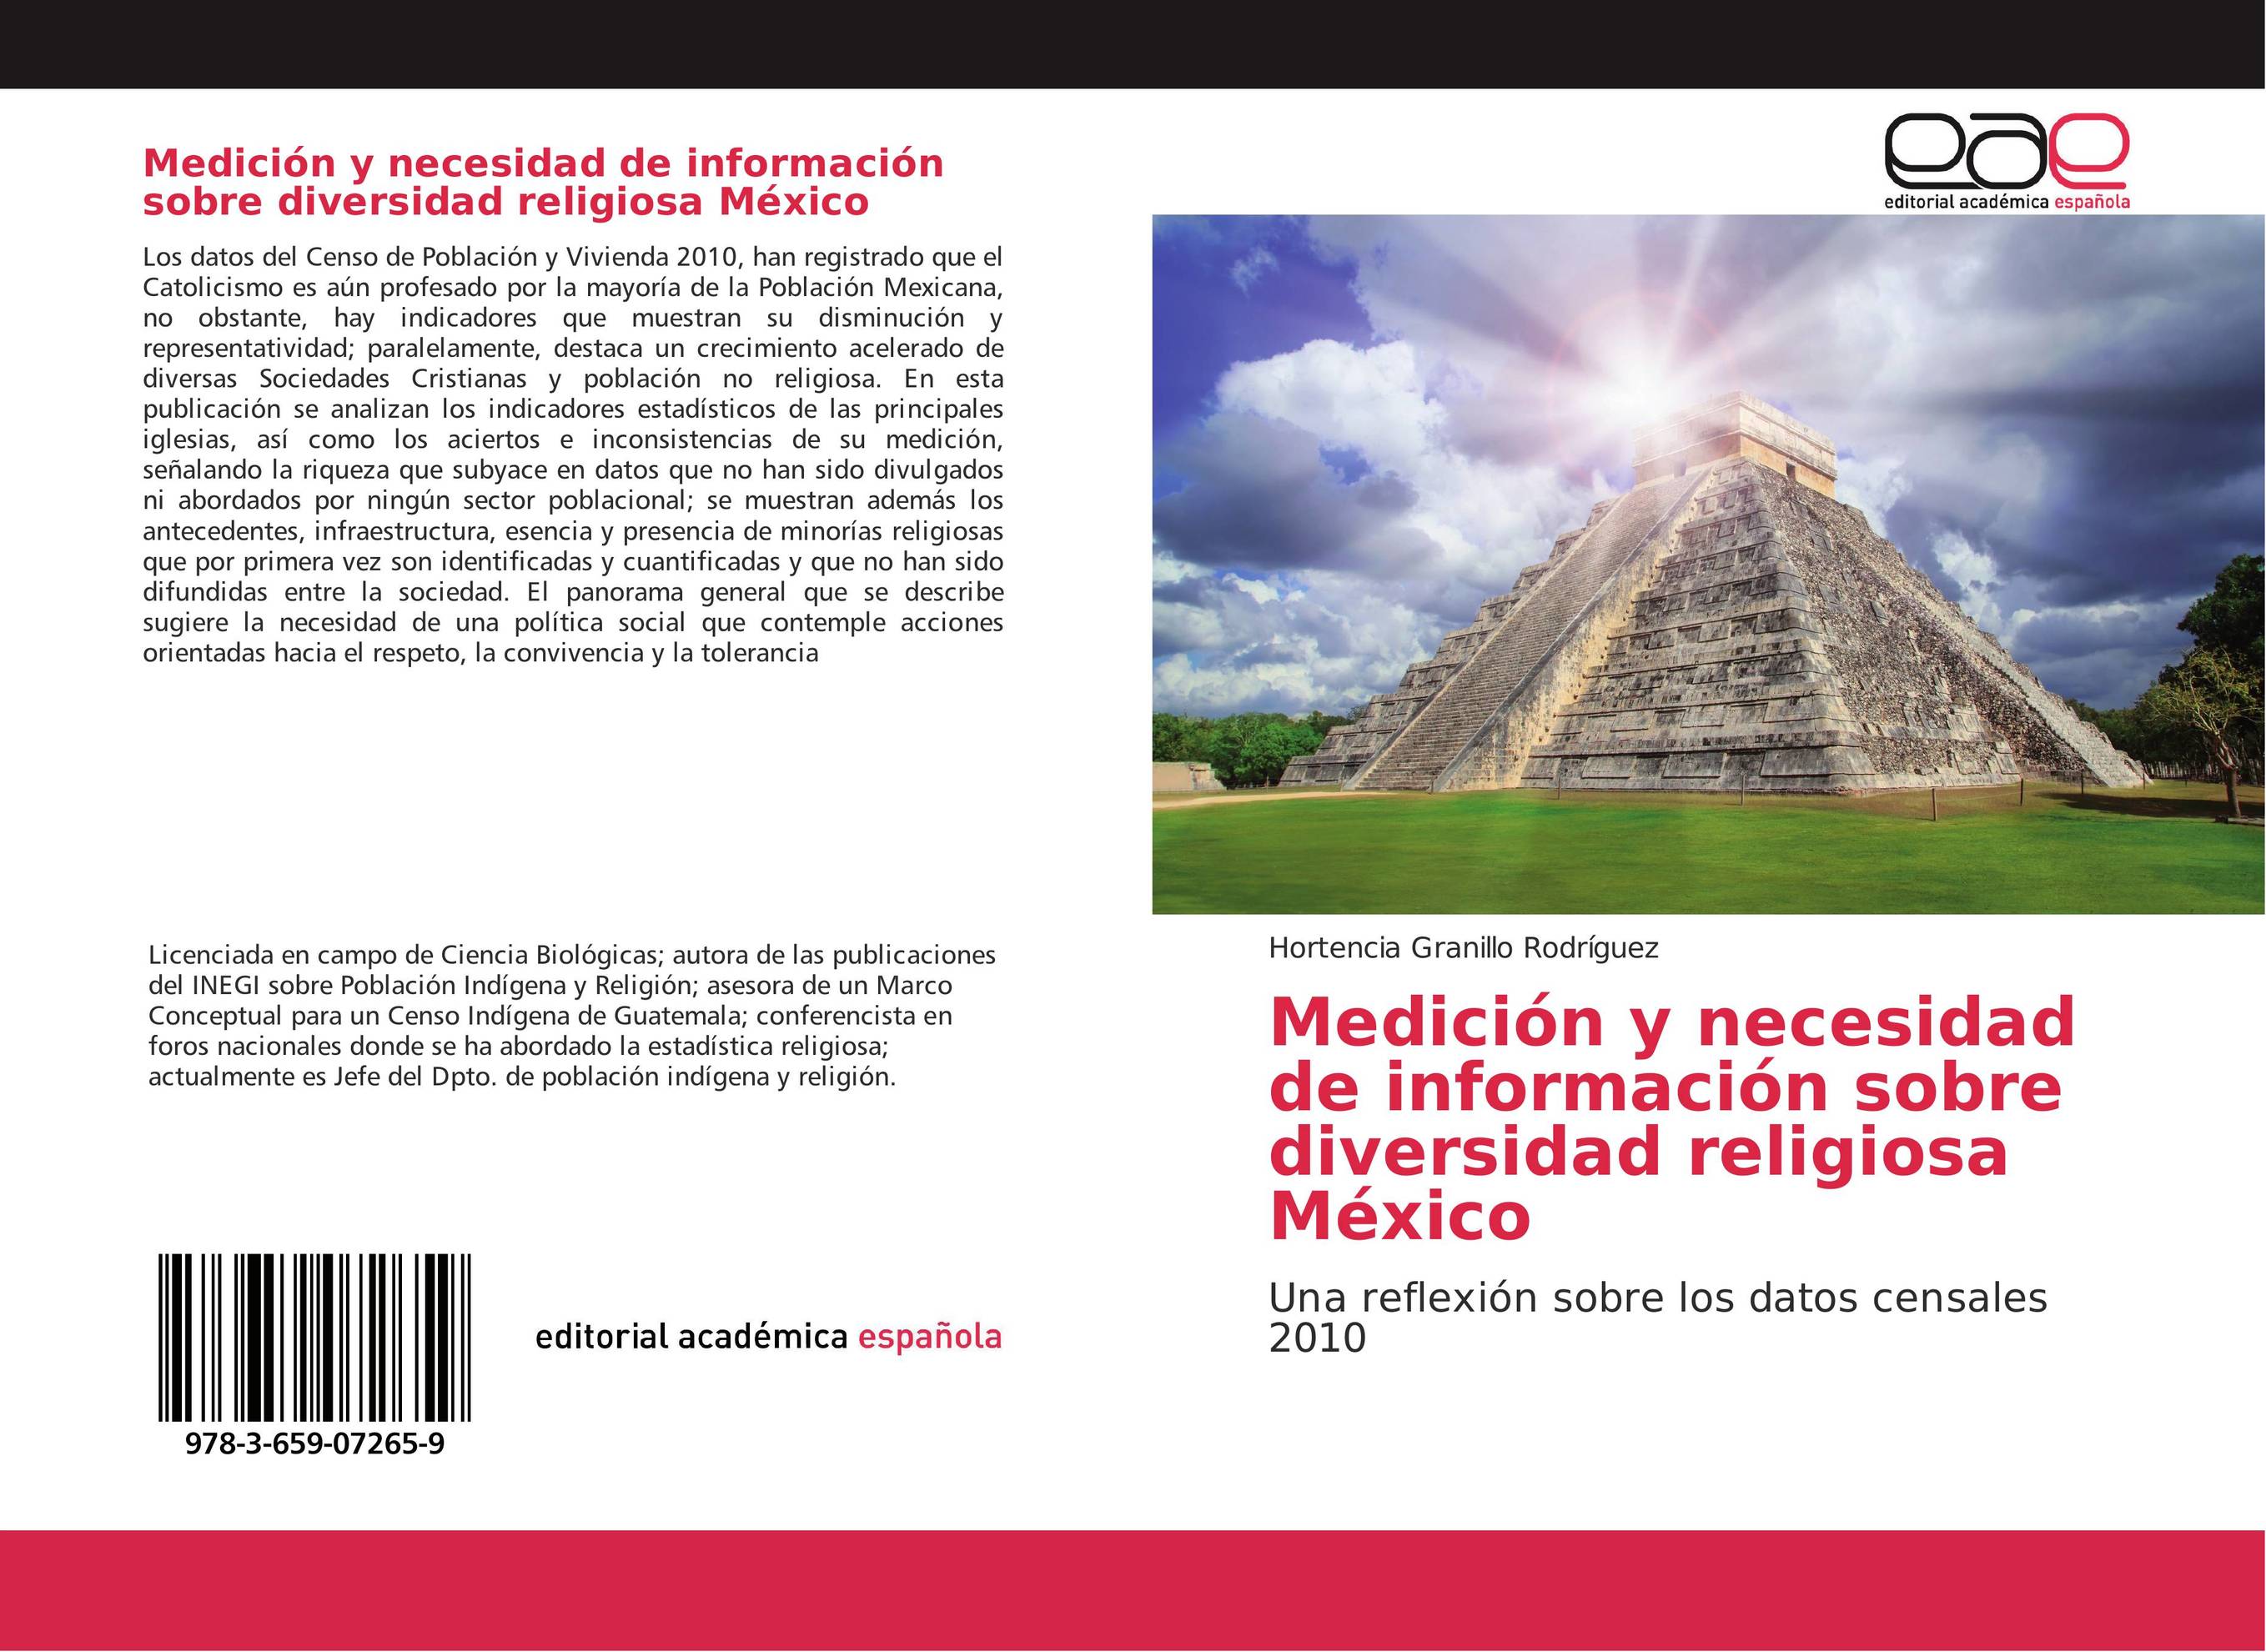 Medición y necesidad de información sobre  diversidad religiosa México